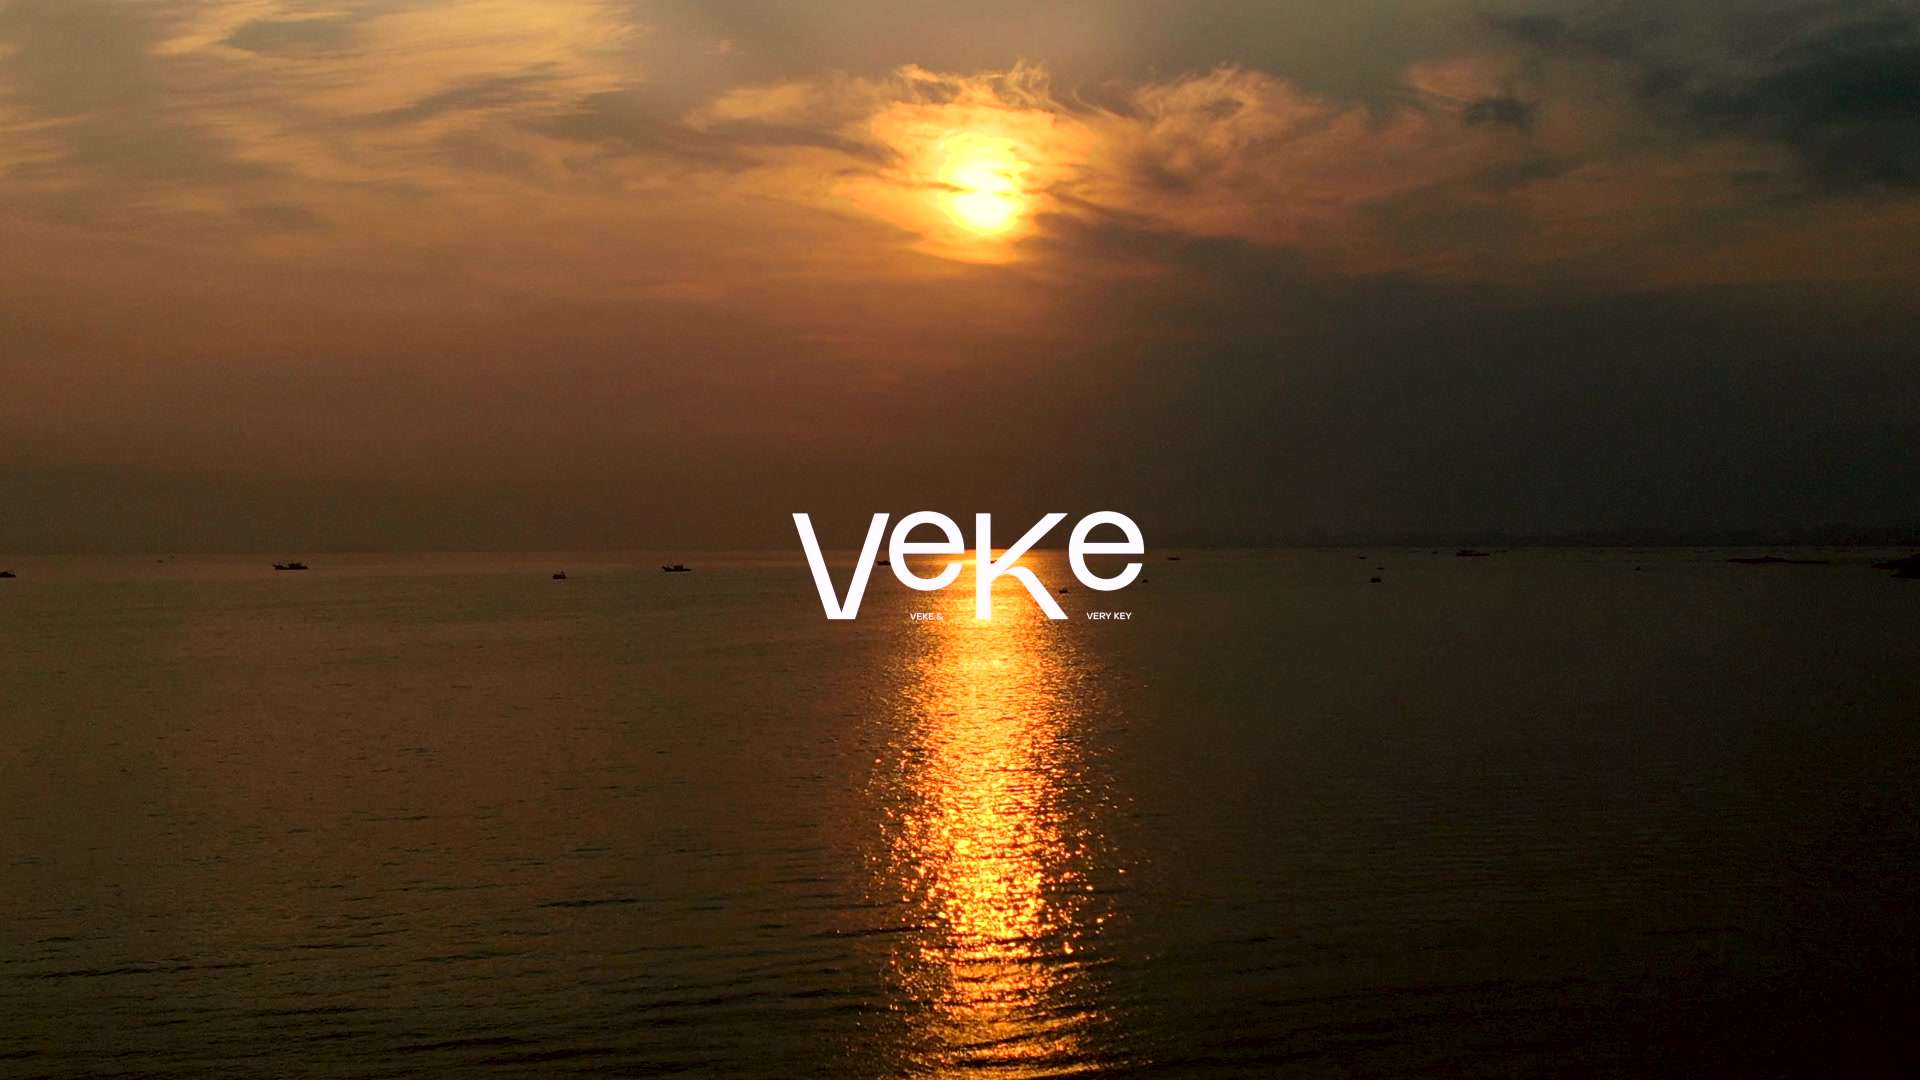 VEKE 海岛拍摄 品牌形象片